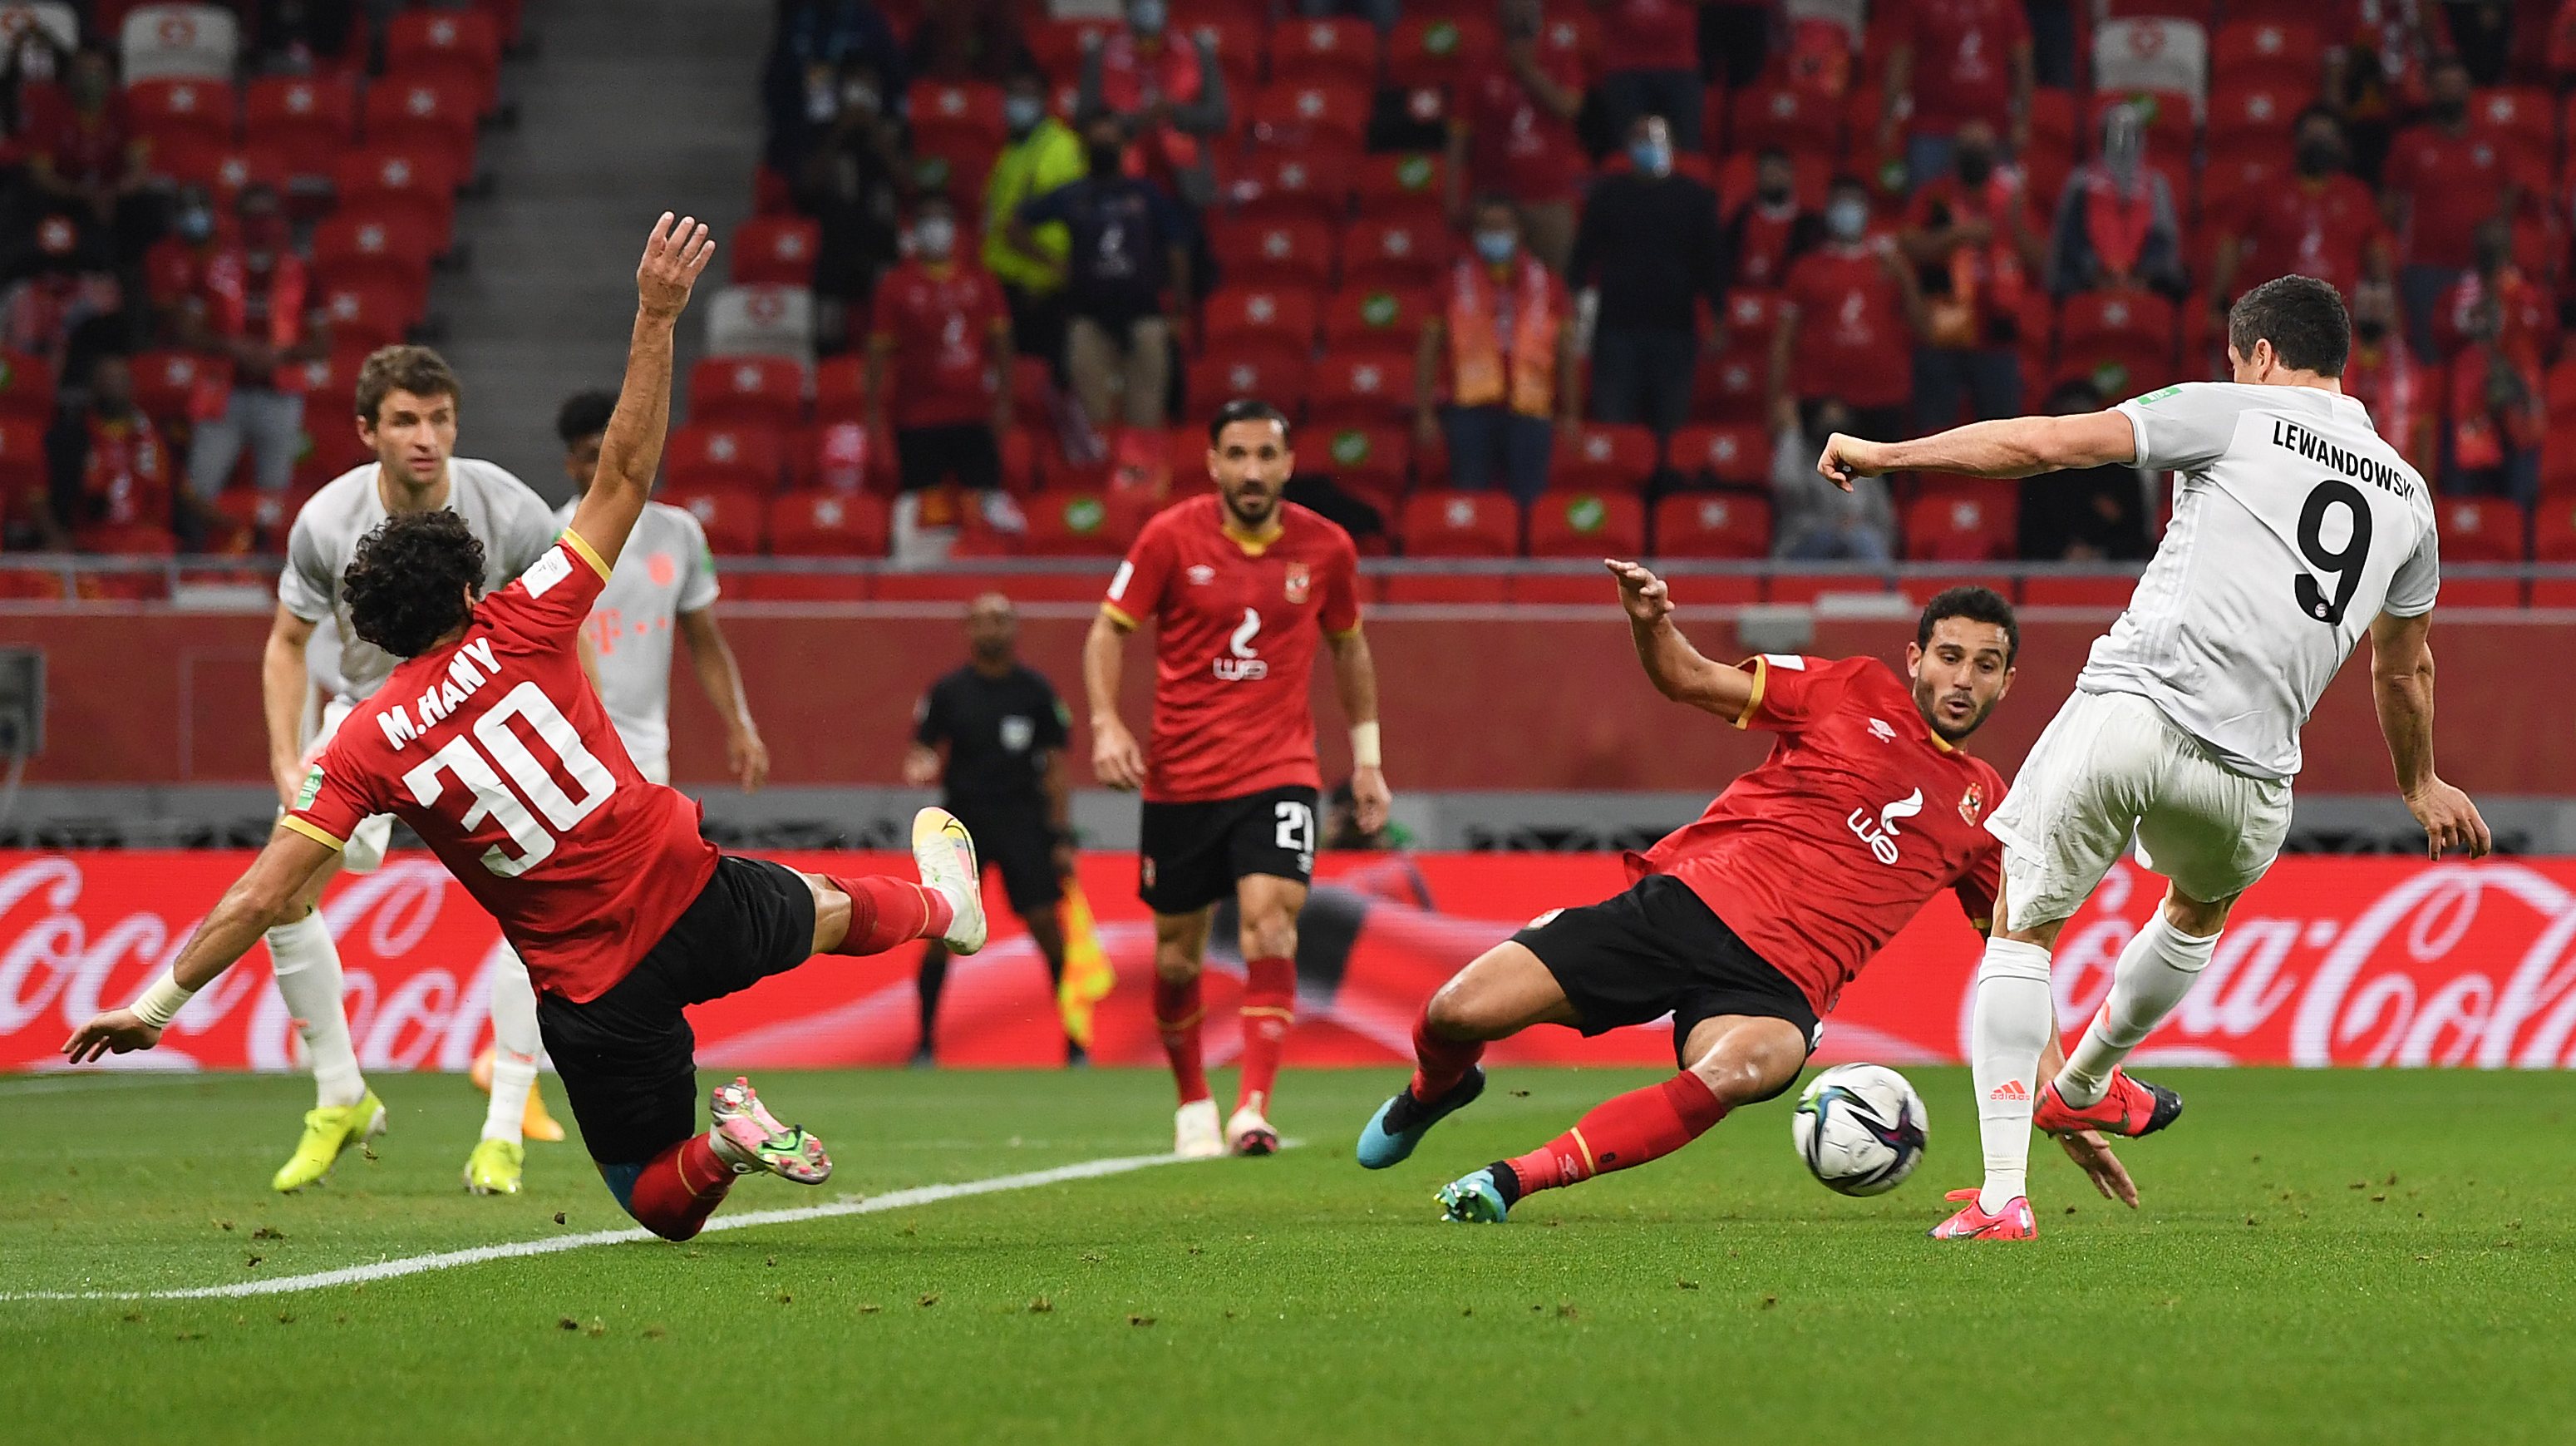 Lewandowski inaugurou assim o marcador frente ao Al Ahly, fechando as contas do jogo a cinco minutos do final